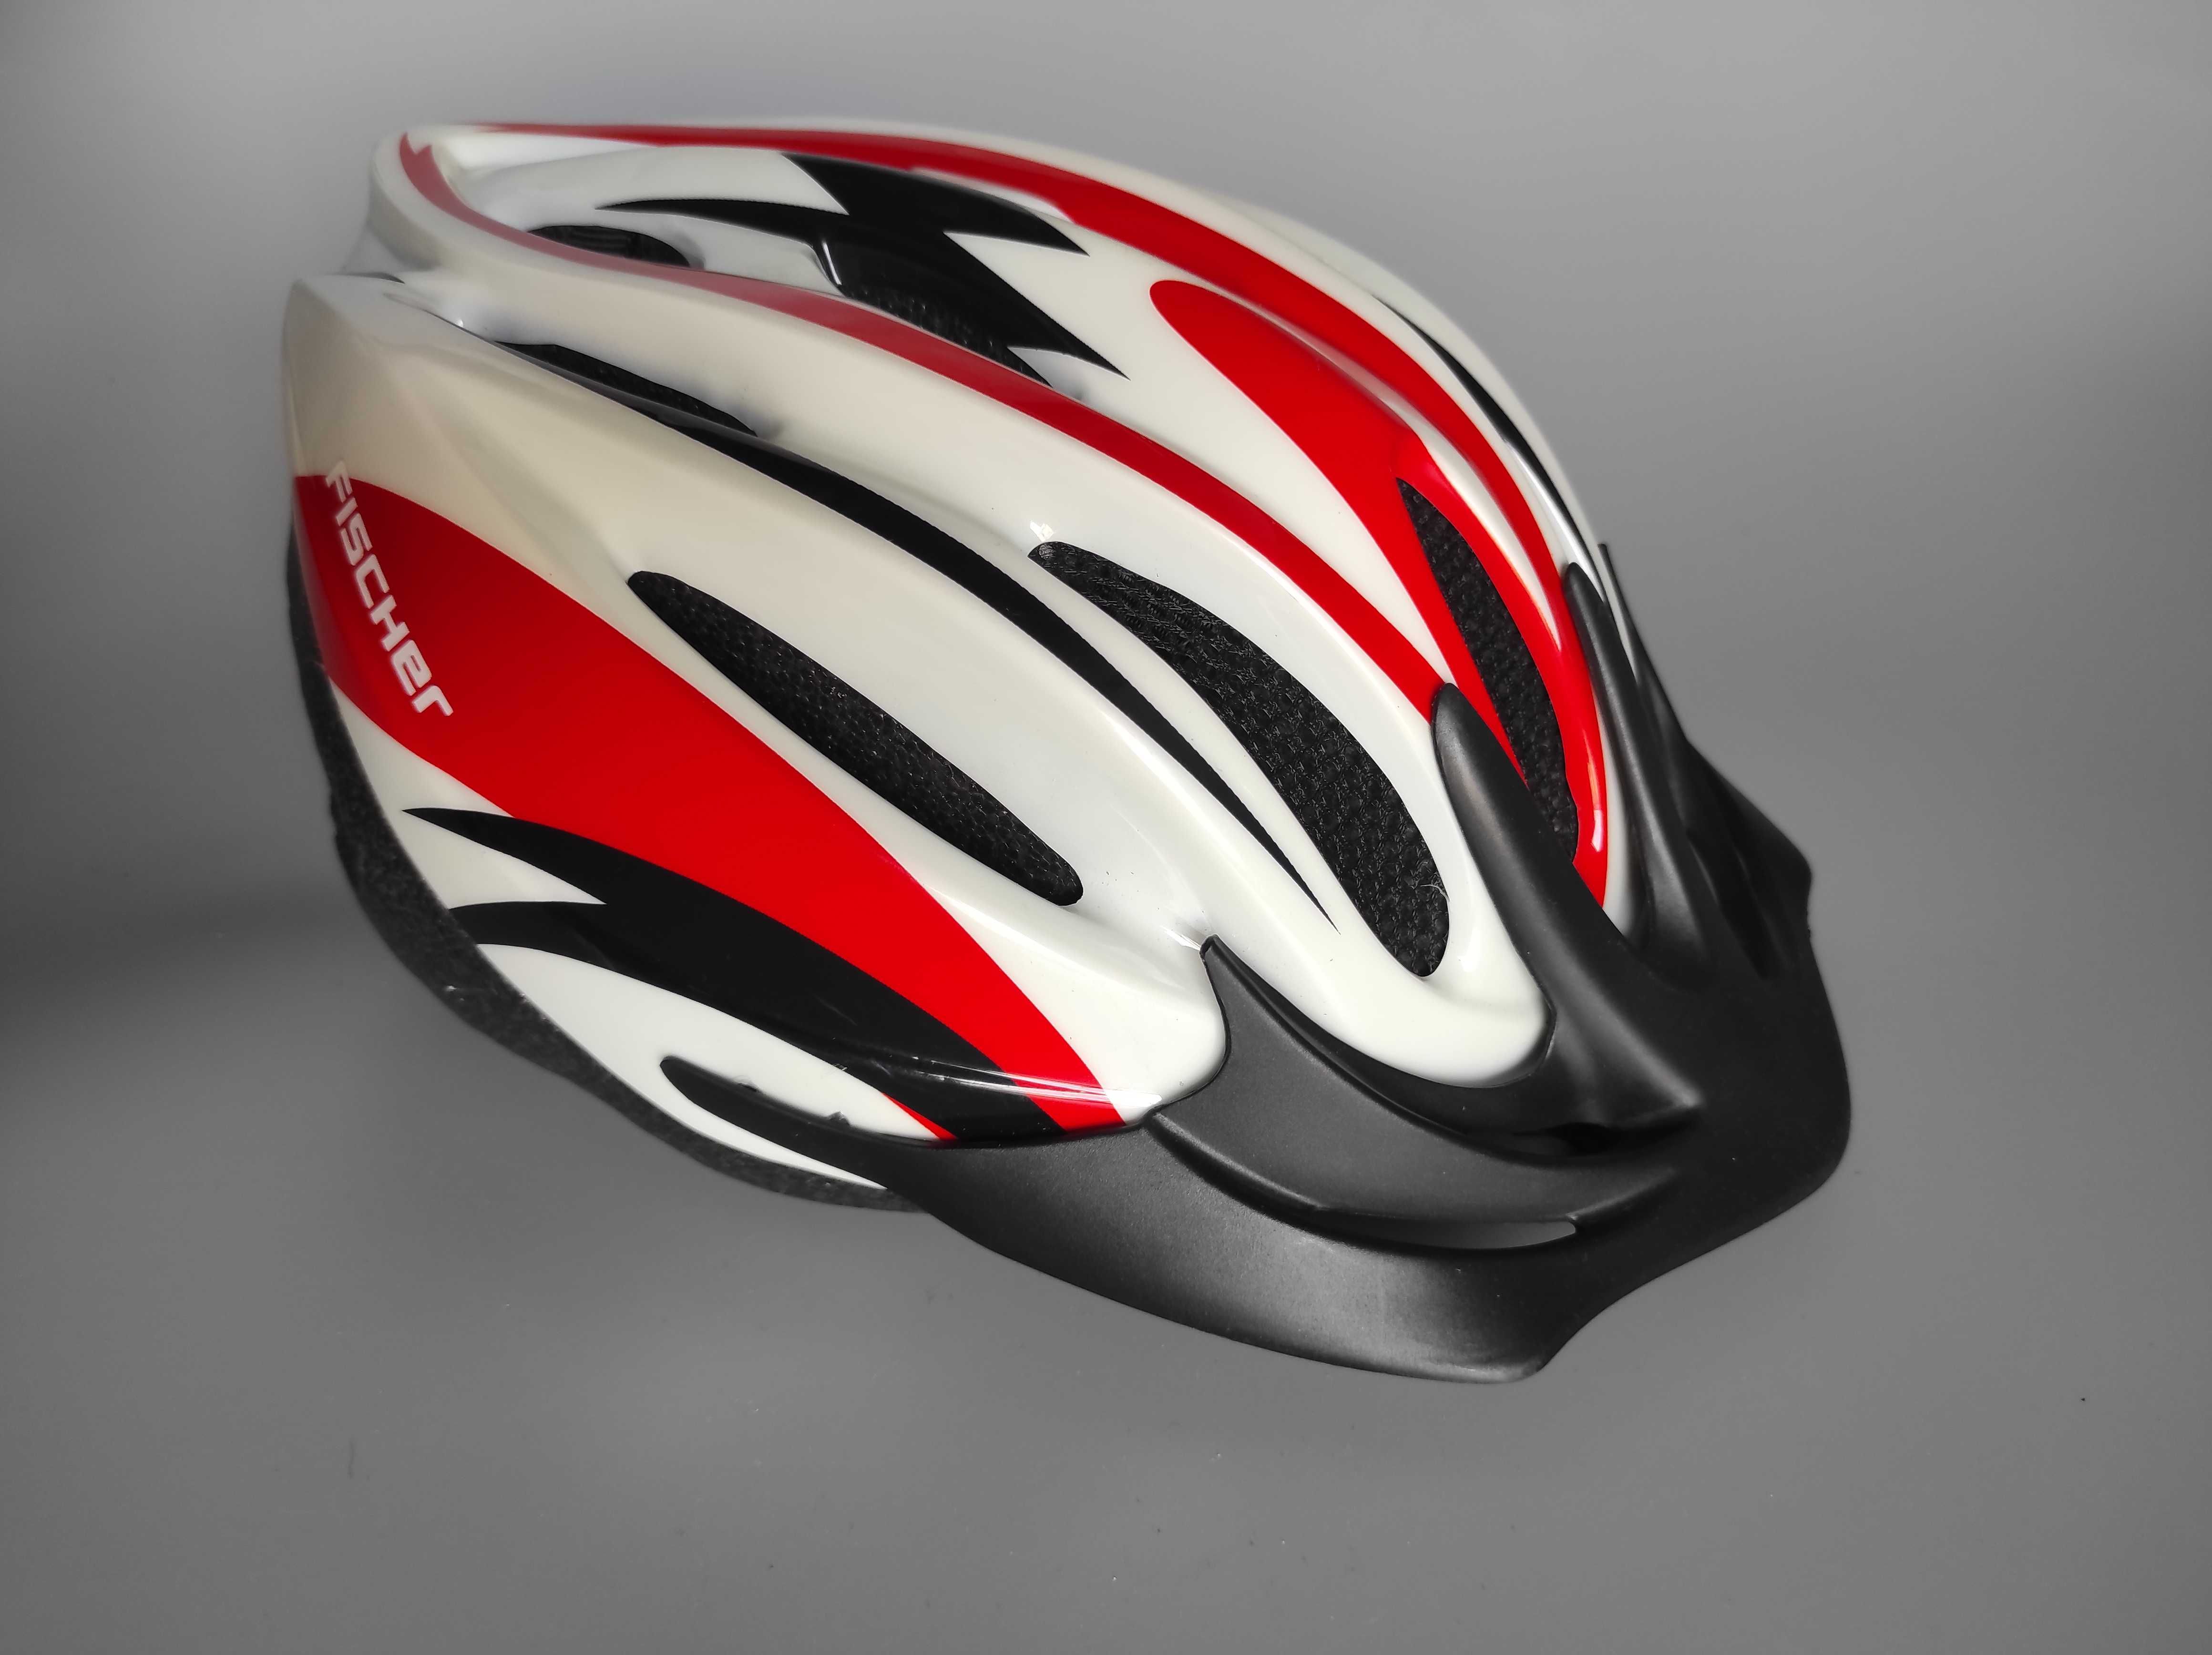 Шлем защитный Fischer, размер 52-57см, велосипедный, Германия.